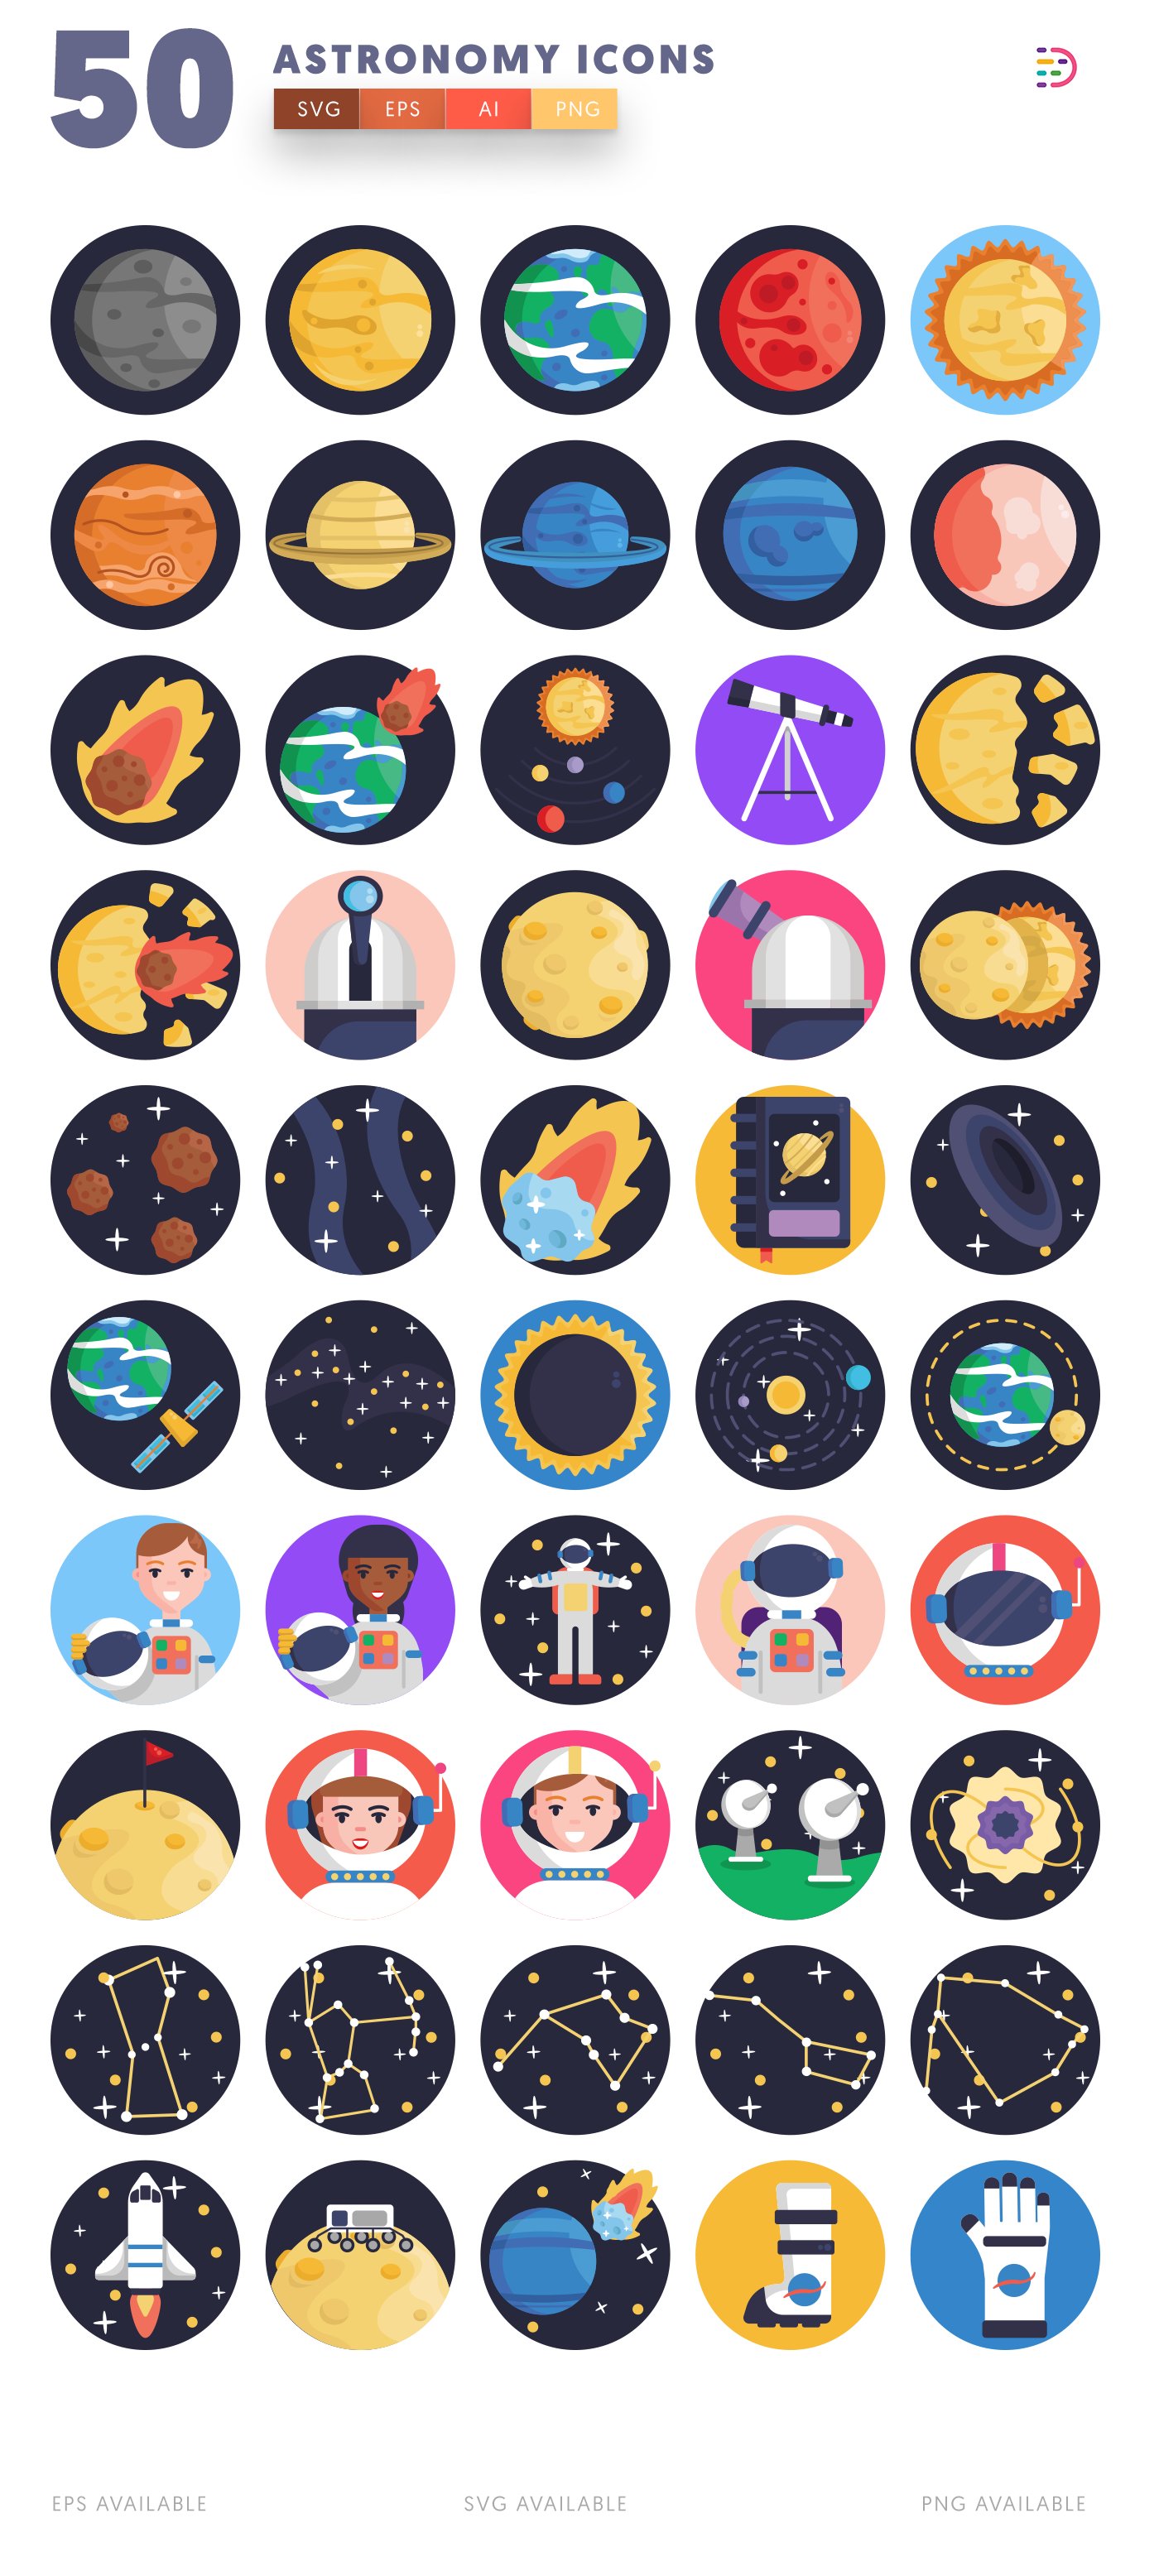 astronomy icons 2 11